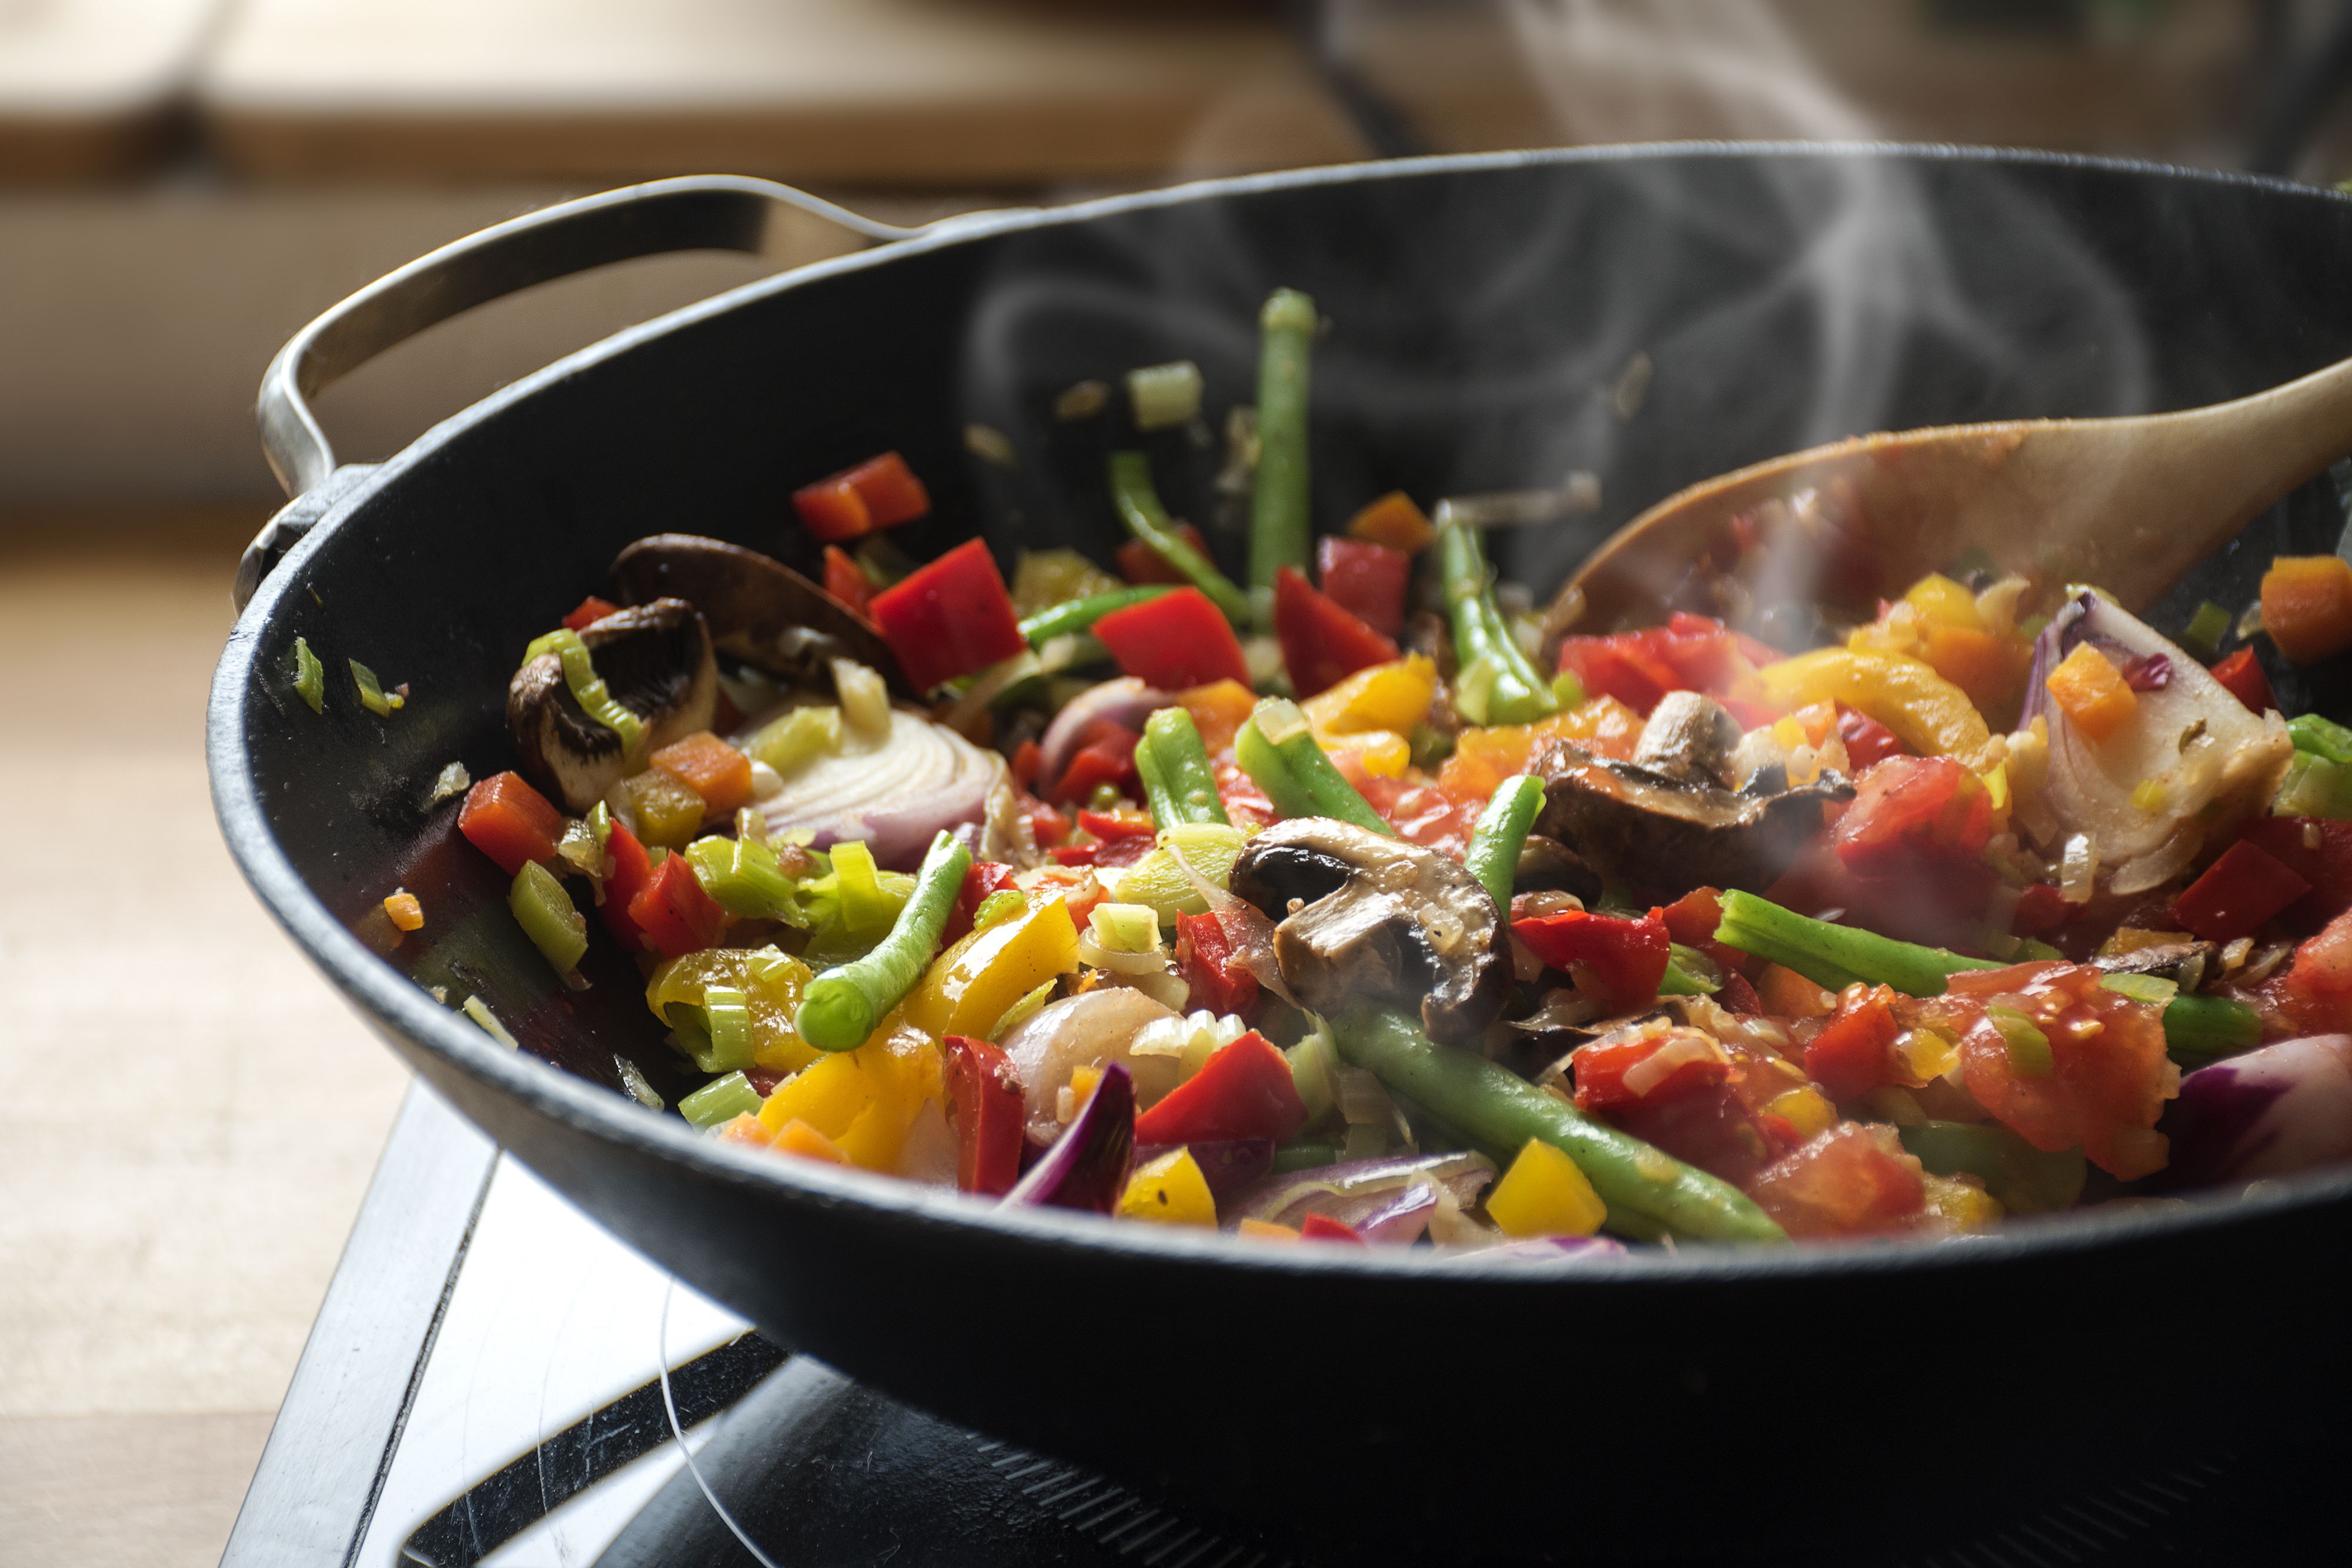 Как пожарить овощи на сковороде